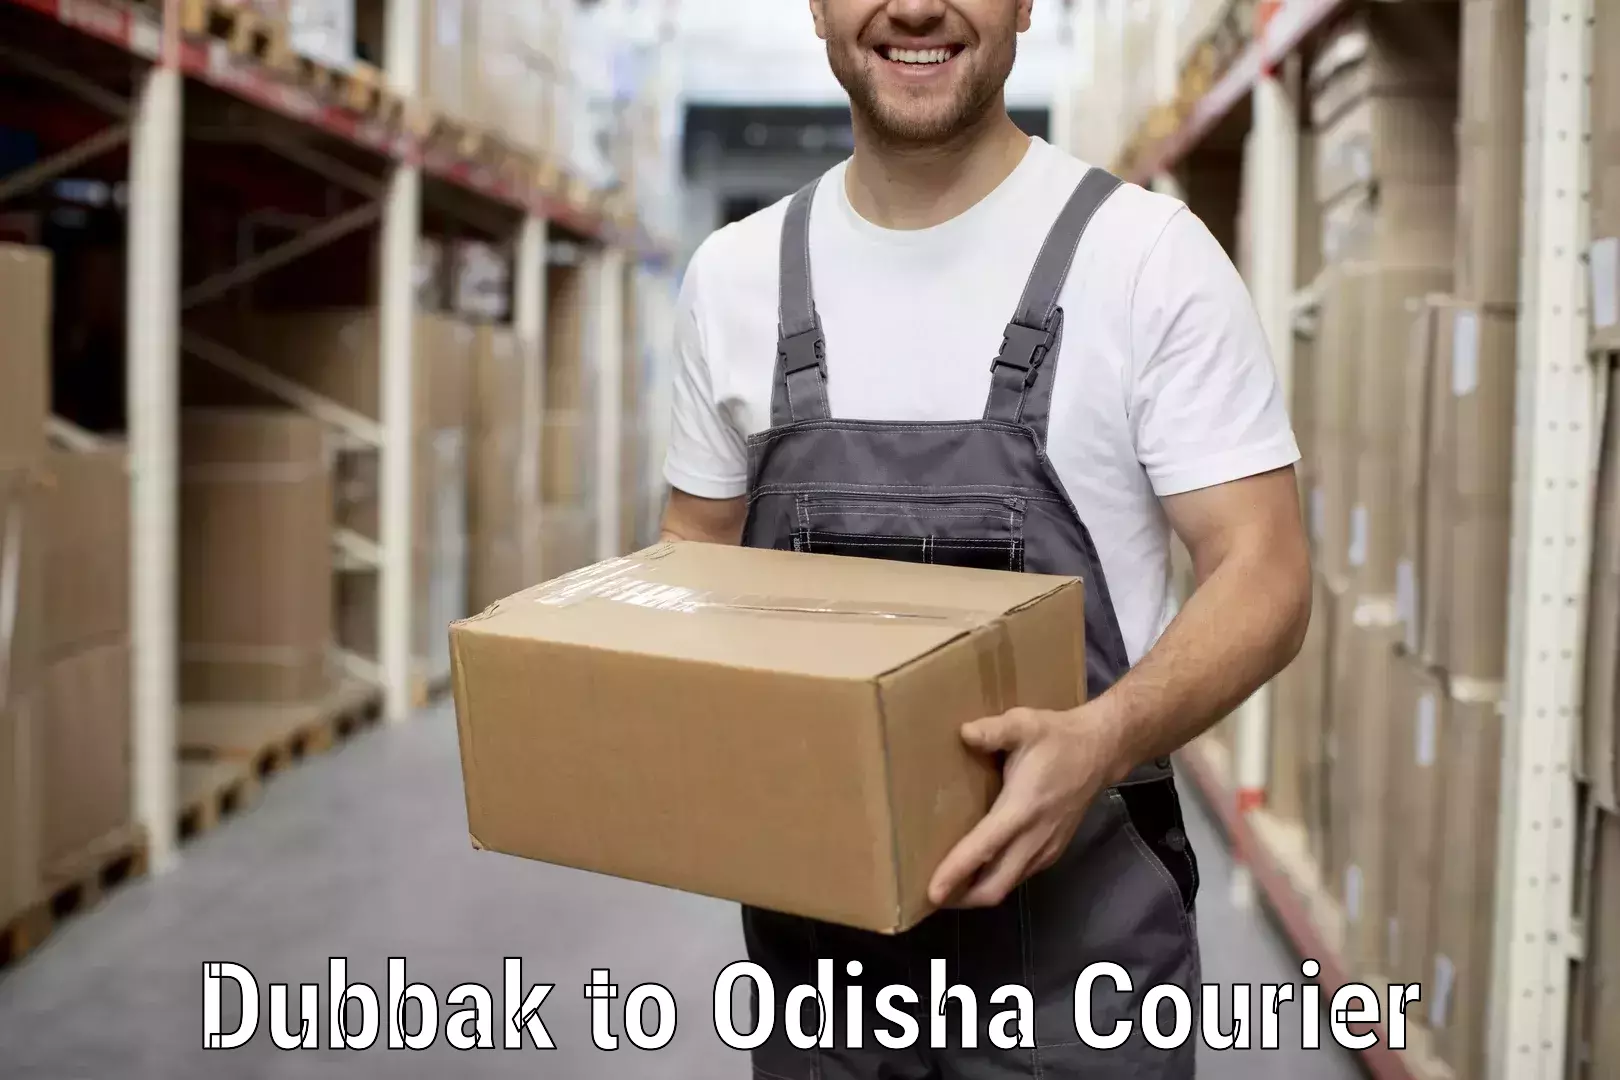 Furniture transport service Dubbak to Cuttack